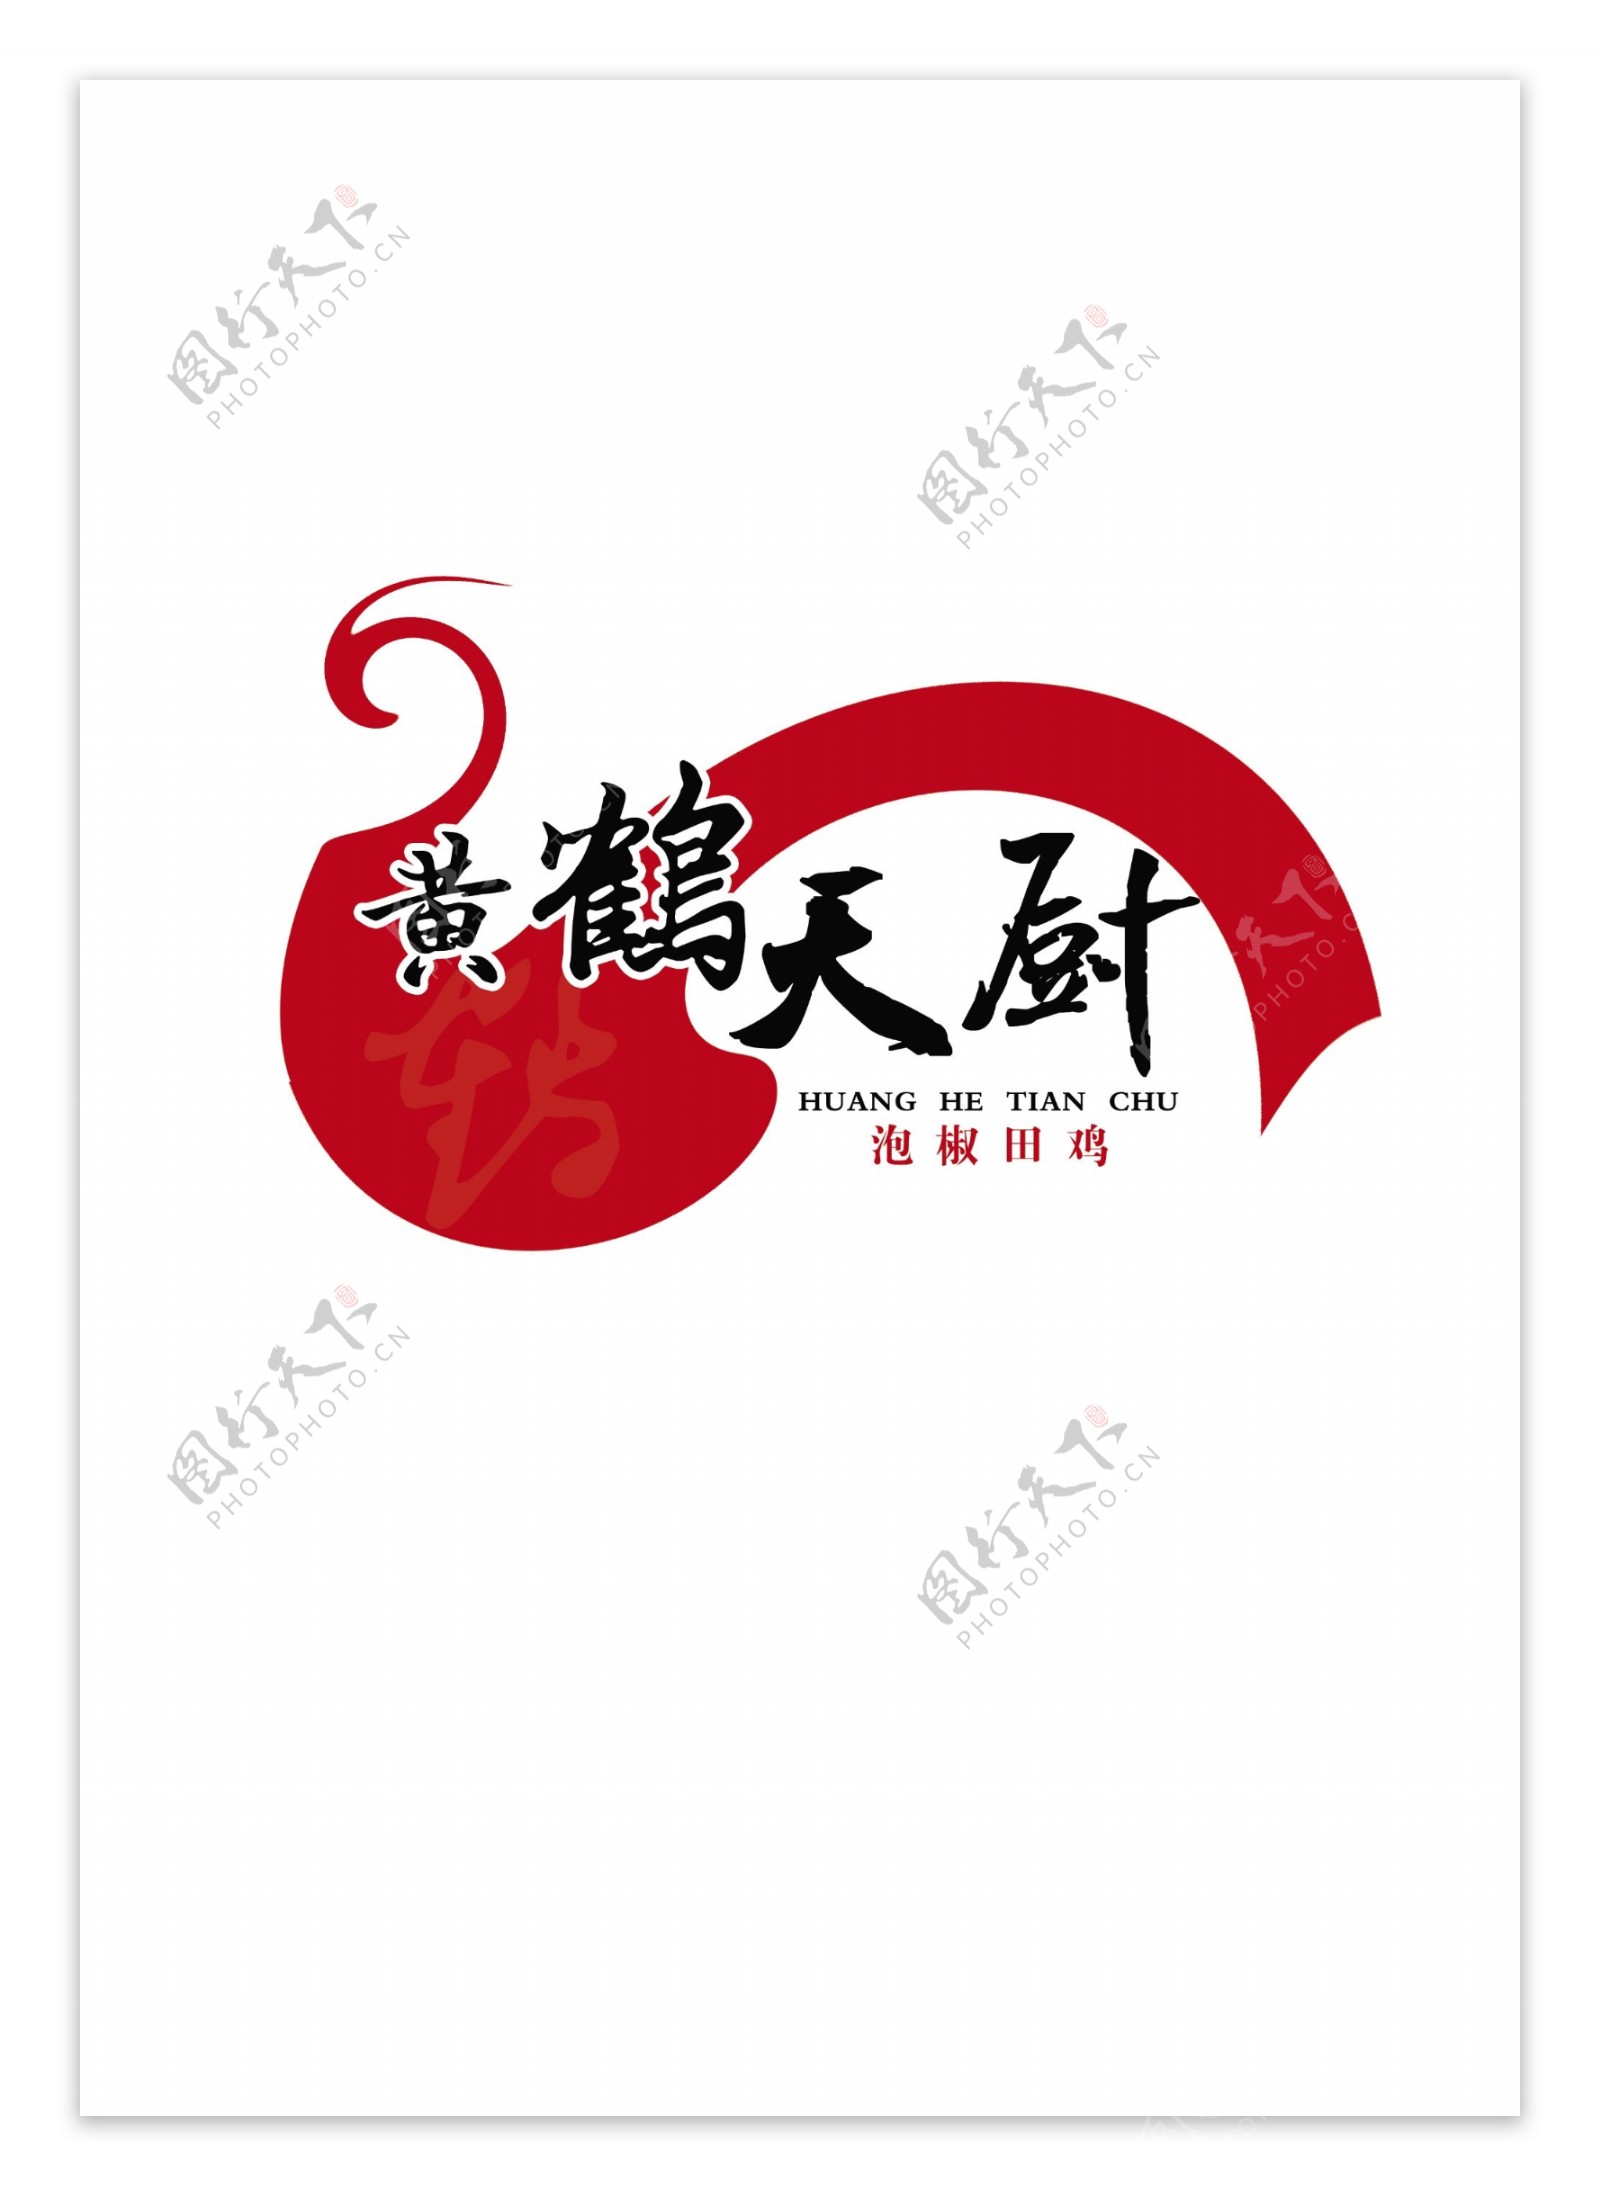 中餐logo稿件1图片